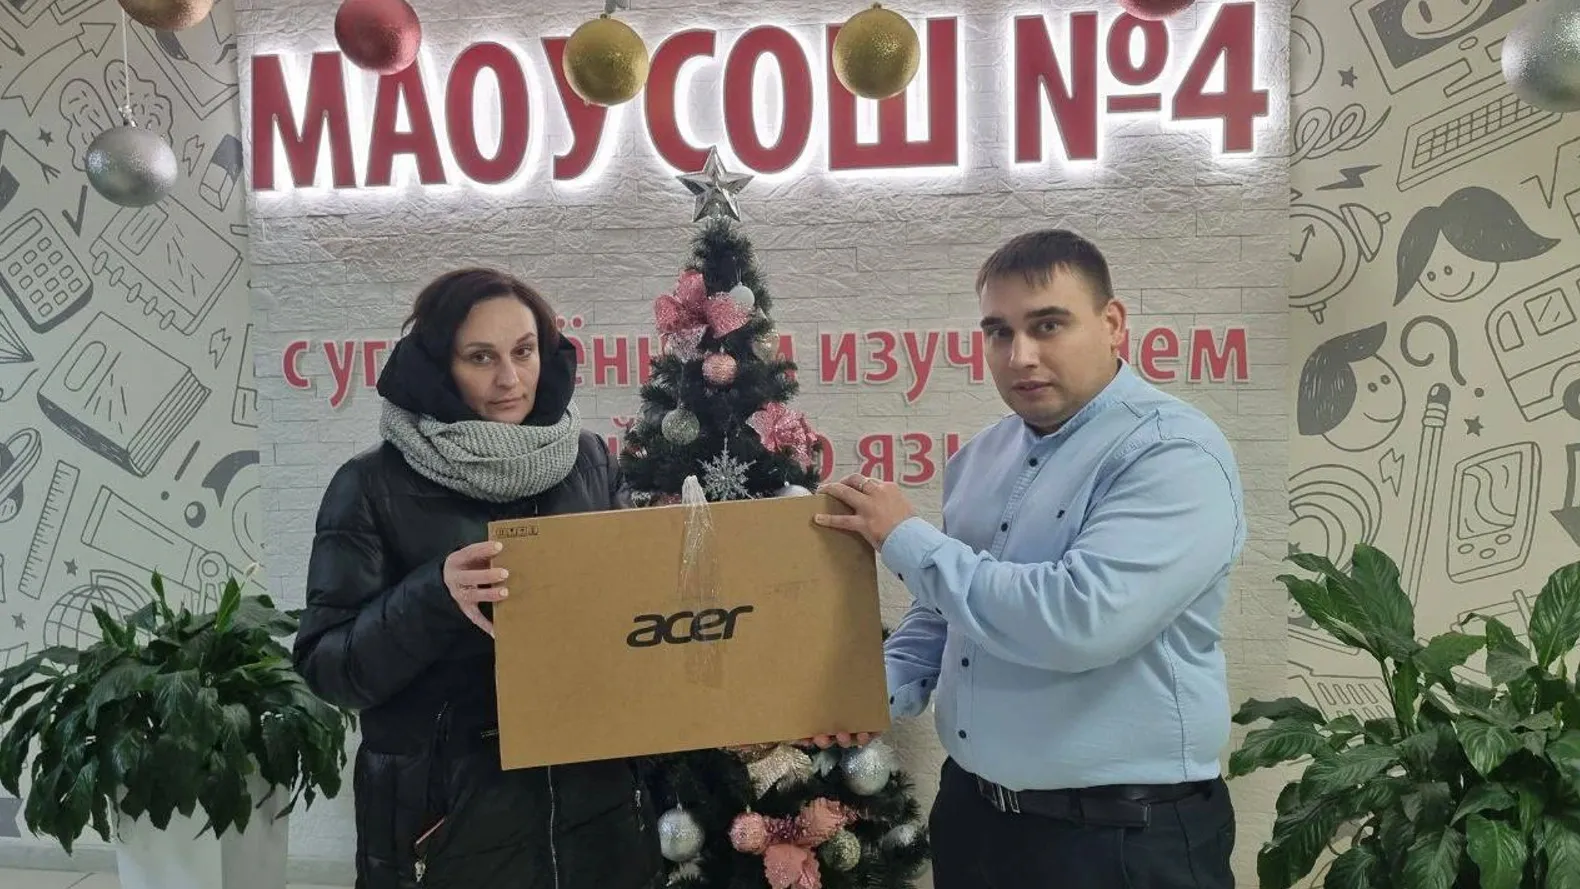 Новоуренгойцы отправили ноутбук учителям поселковой школы Волновахского района. Фото: t.me/yamalryadom